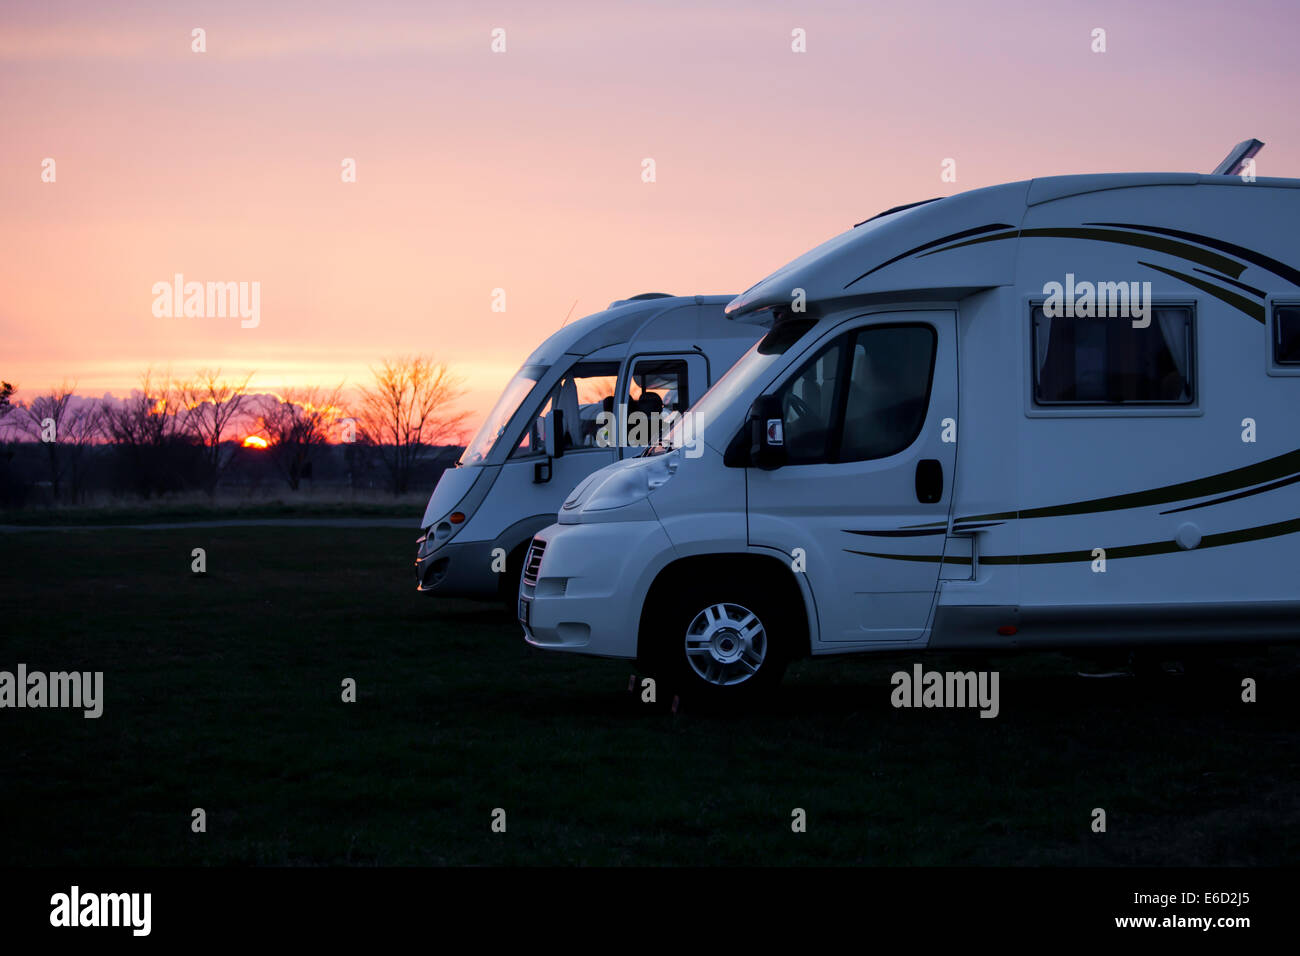 Deux voitures de camping modernes dans le coucher du soleil la lumière. Banque D'Images